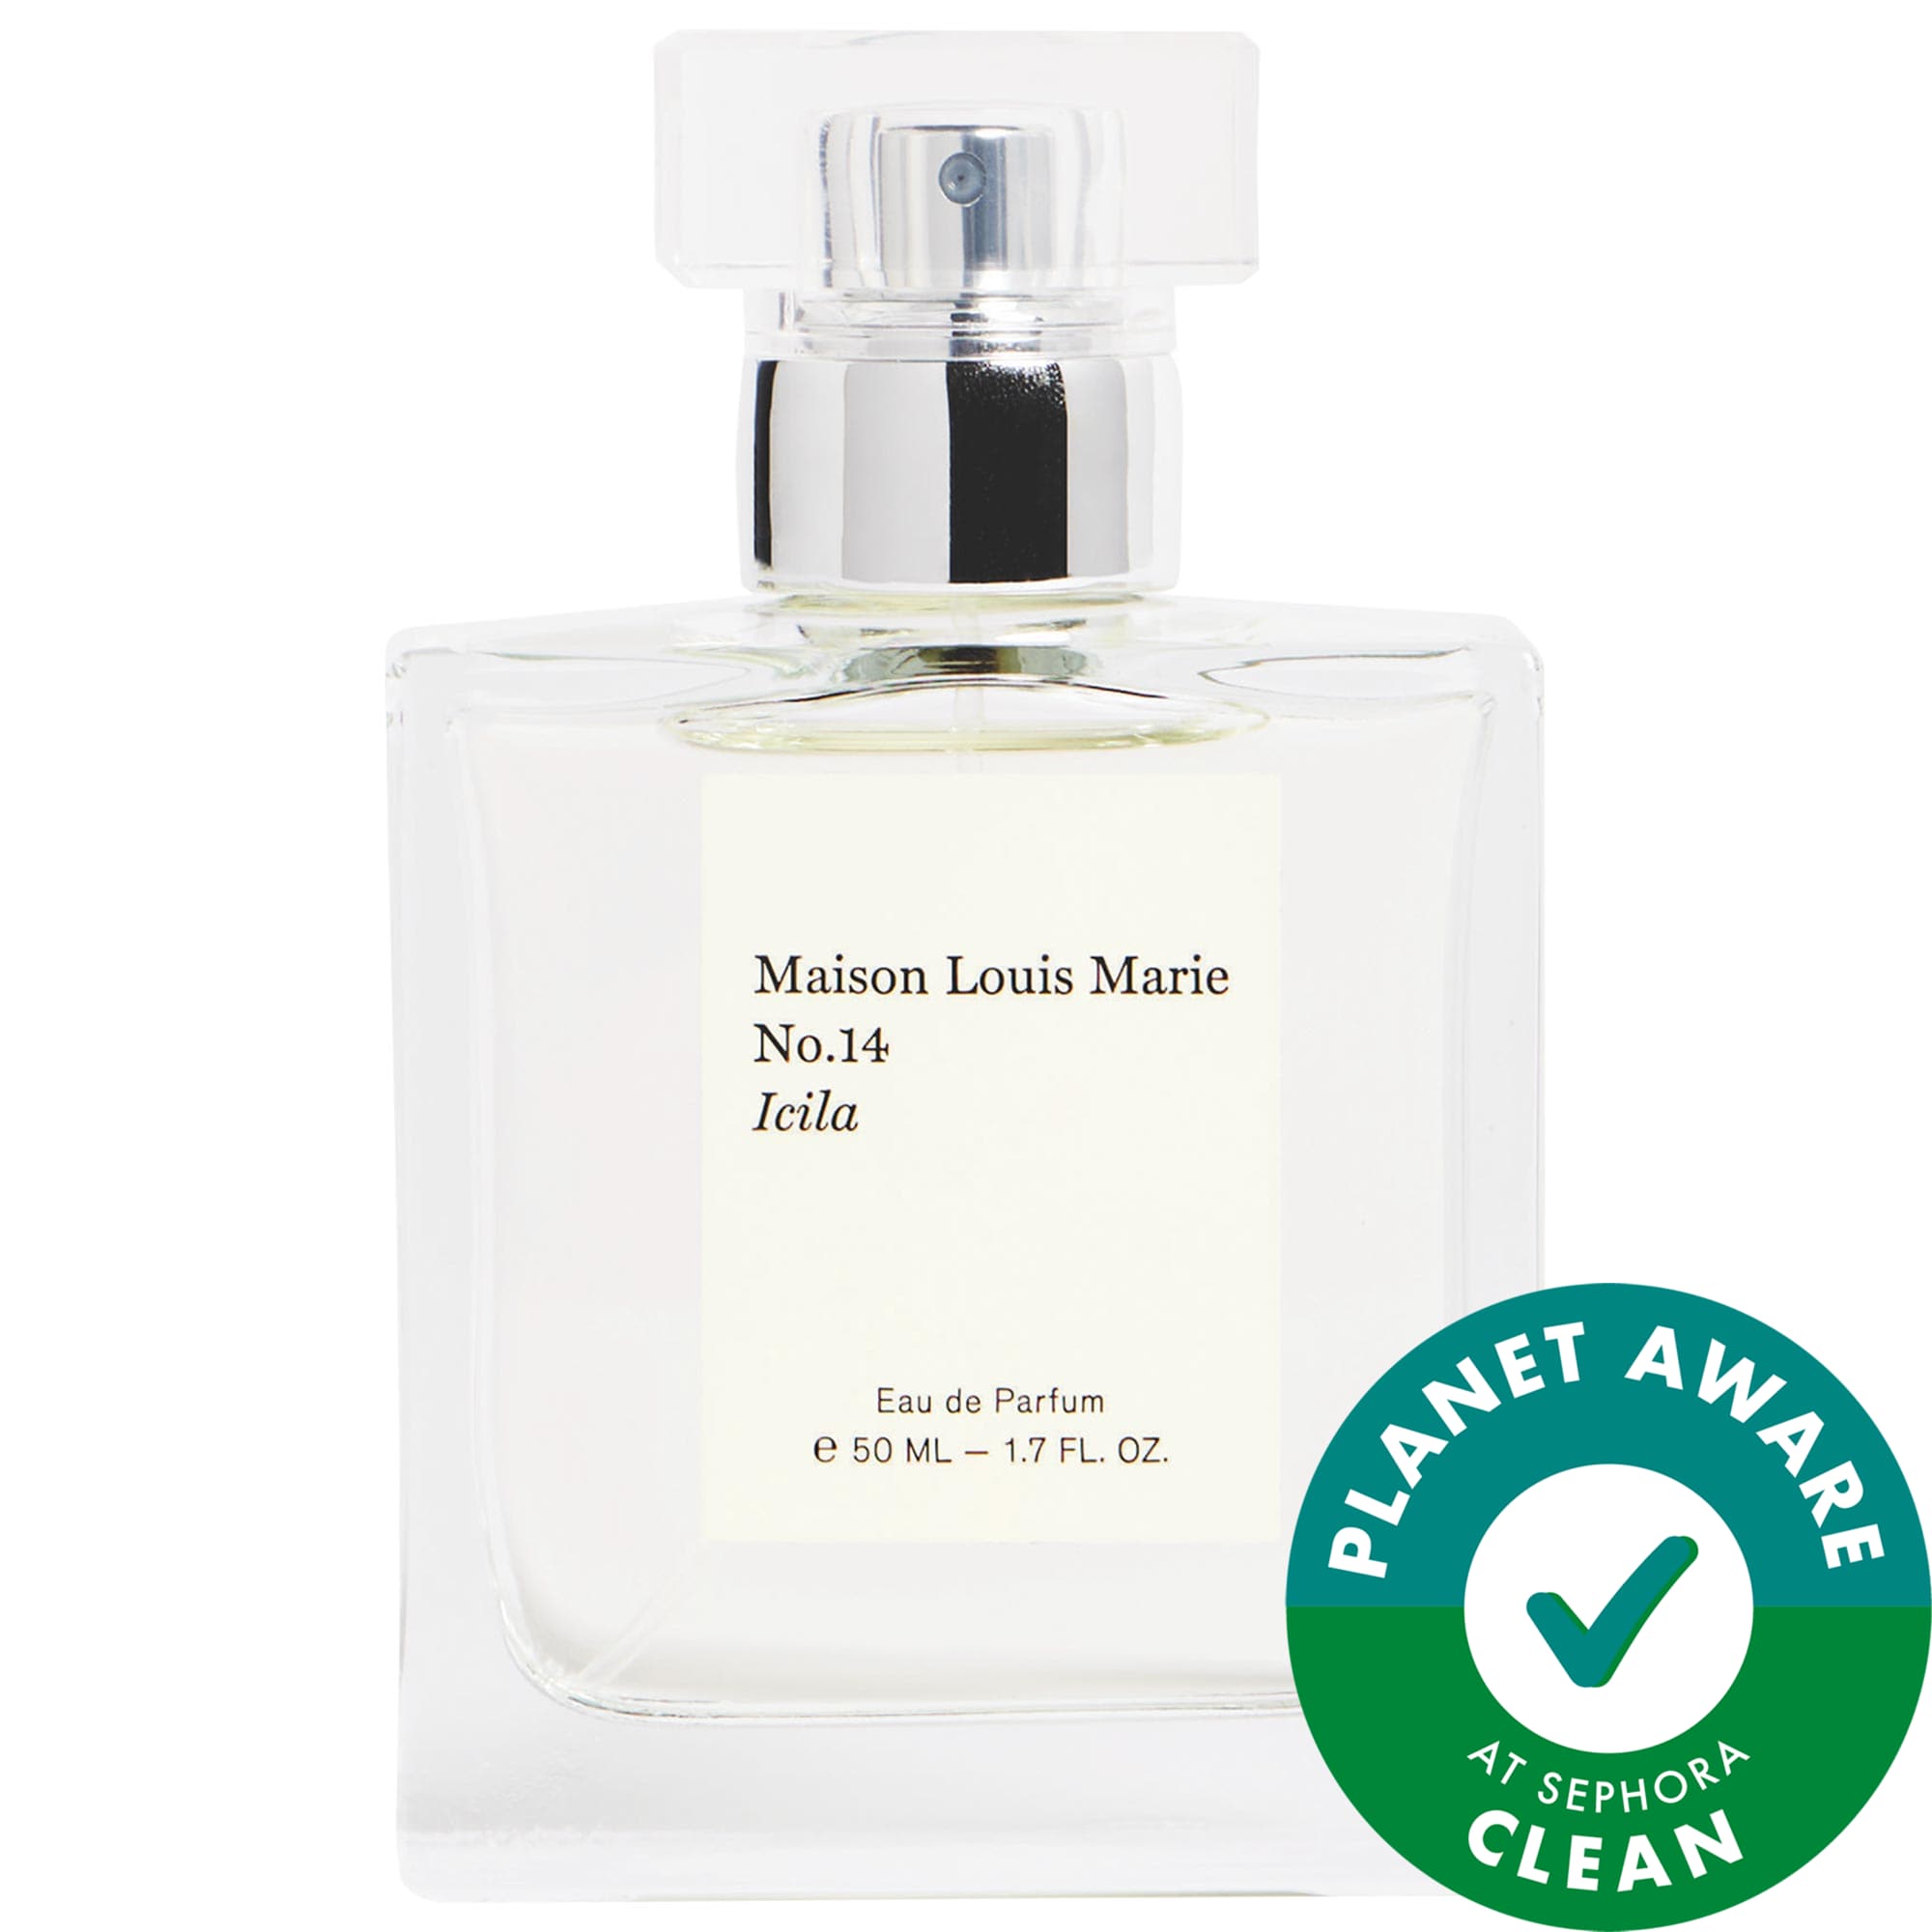 No. 14 Icila Eau de Parfum Maison Louis Marie